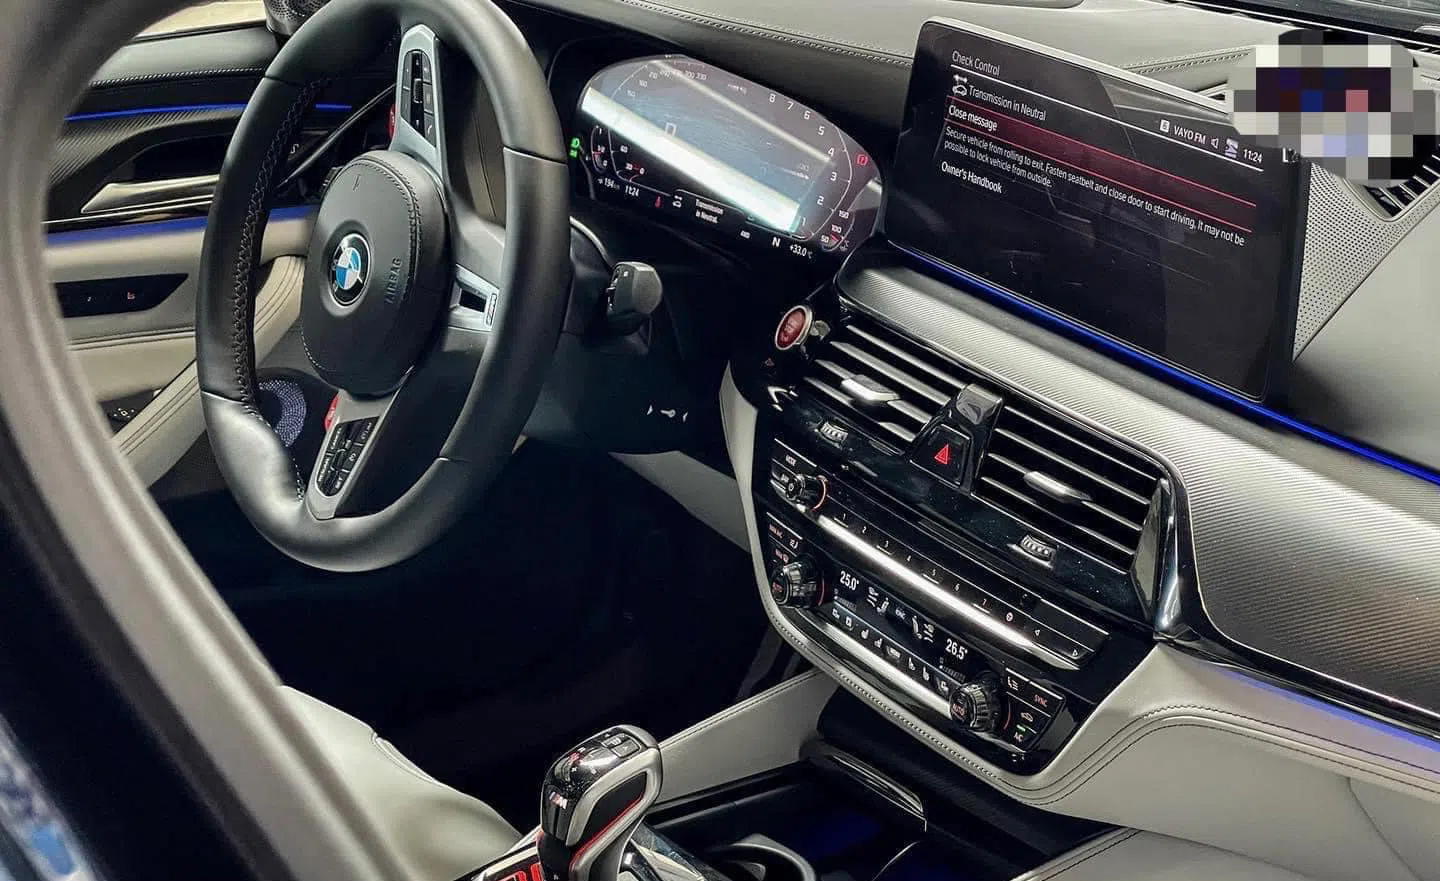 Cận cảnh chiếc BMW M5 chỉ 7 tỷ: Xế sang thế hệ mới rẻ chưa từng có